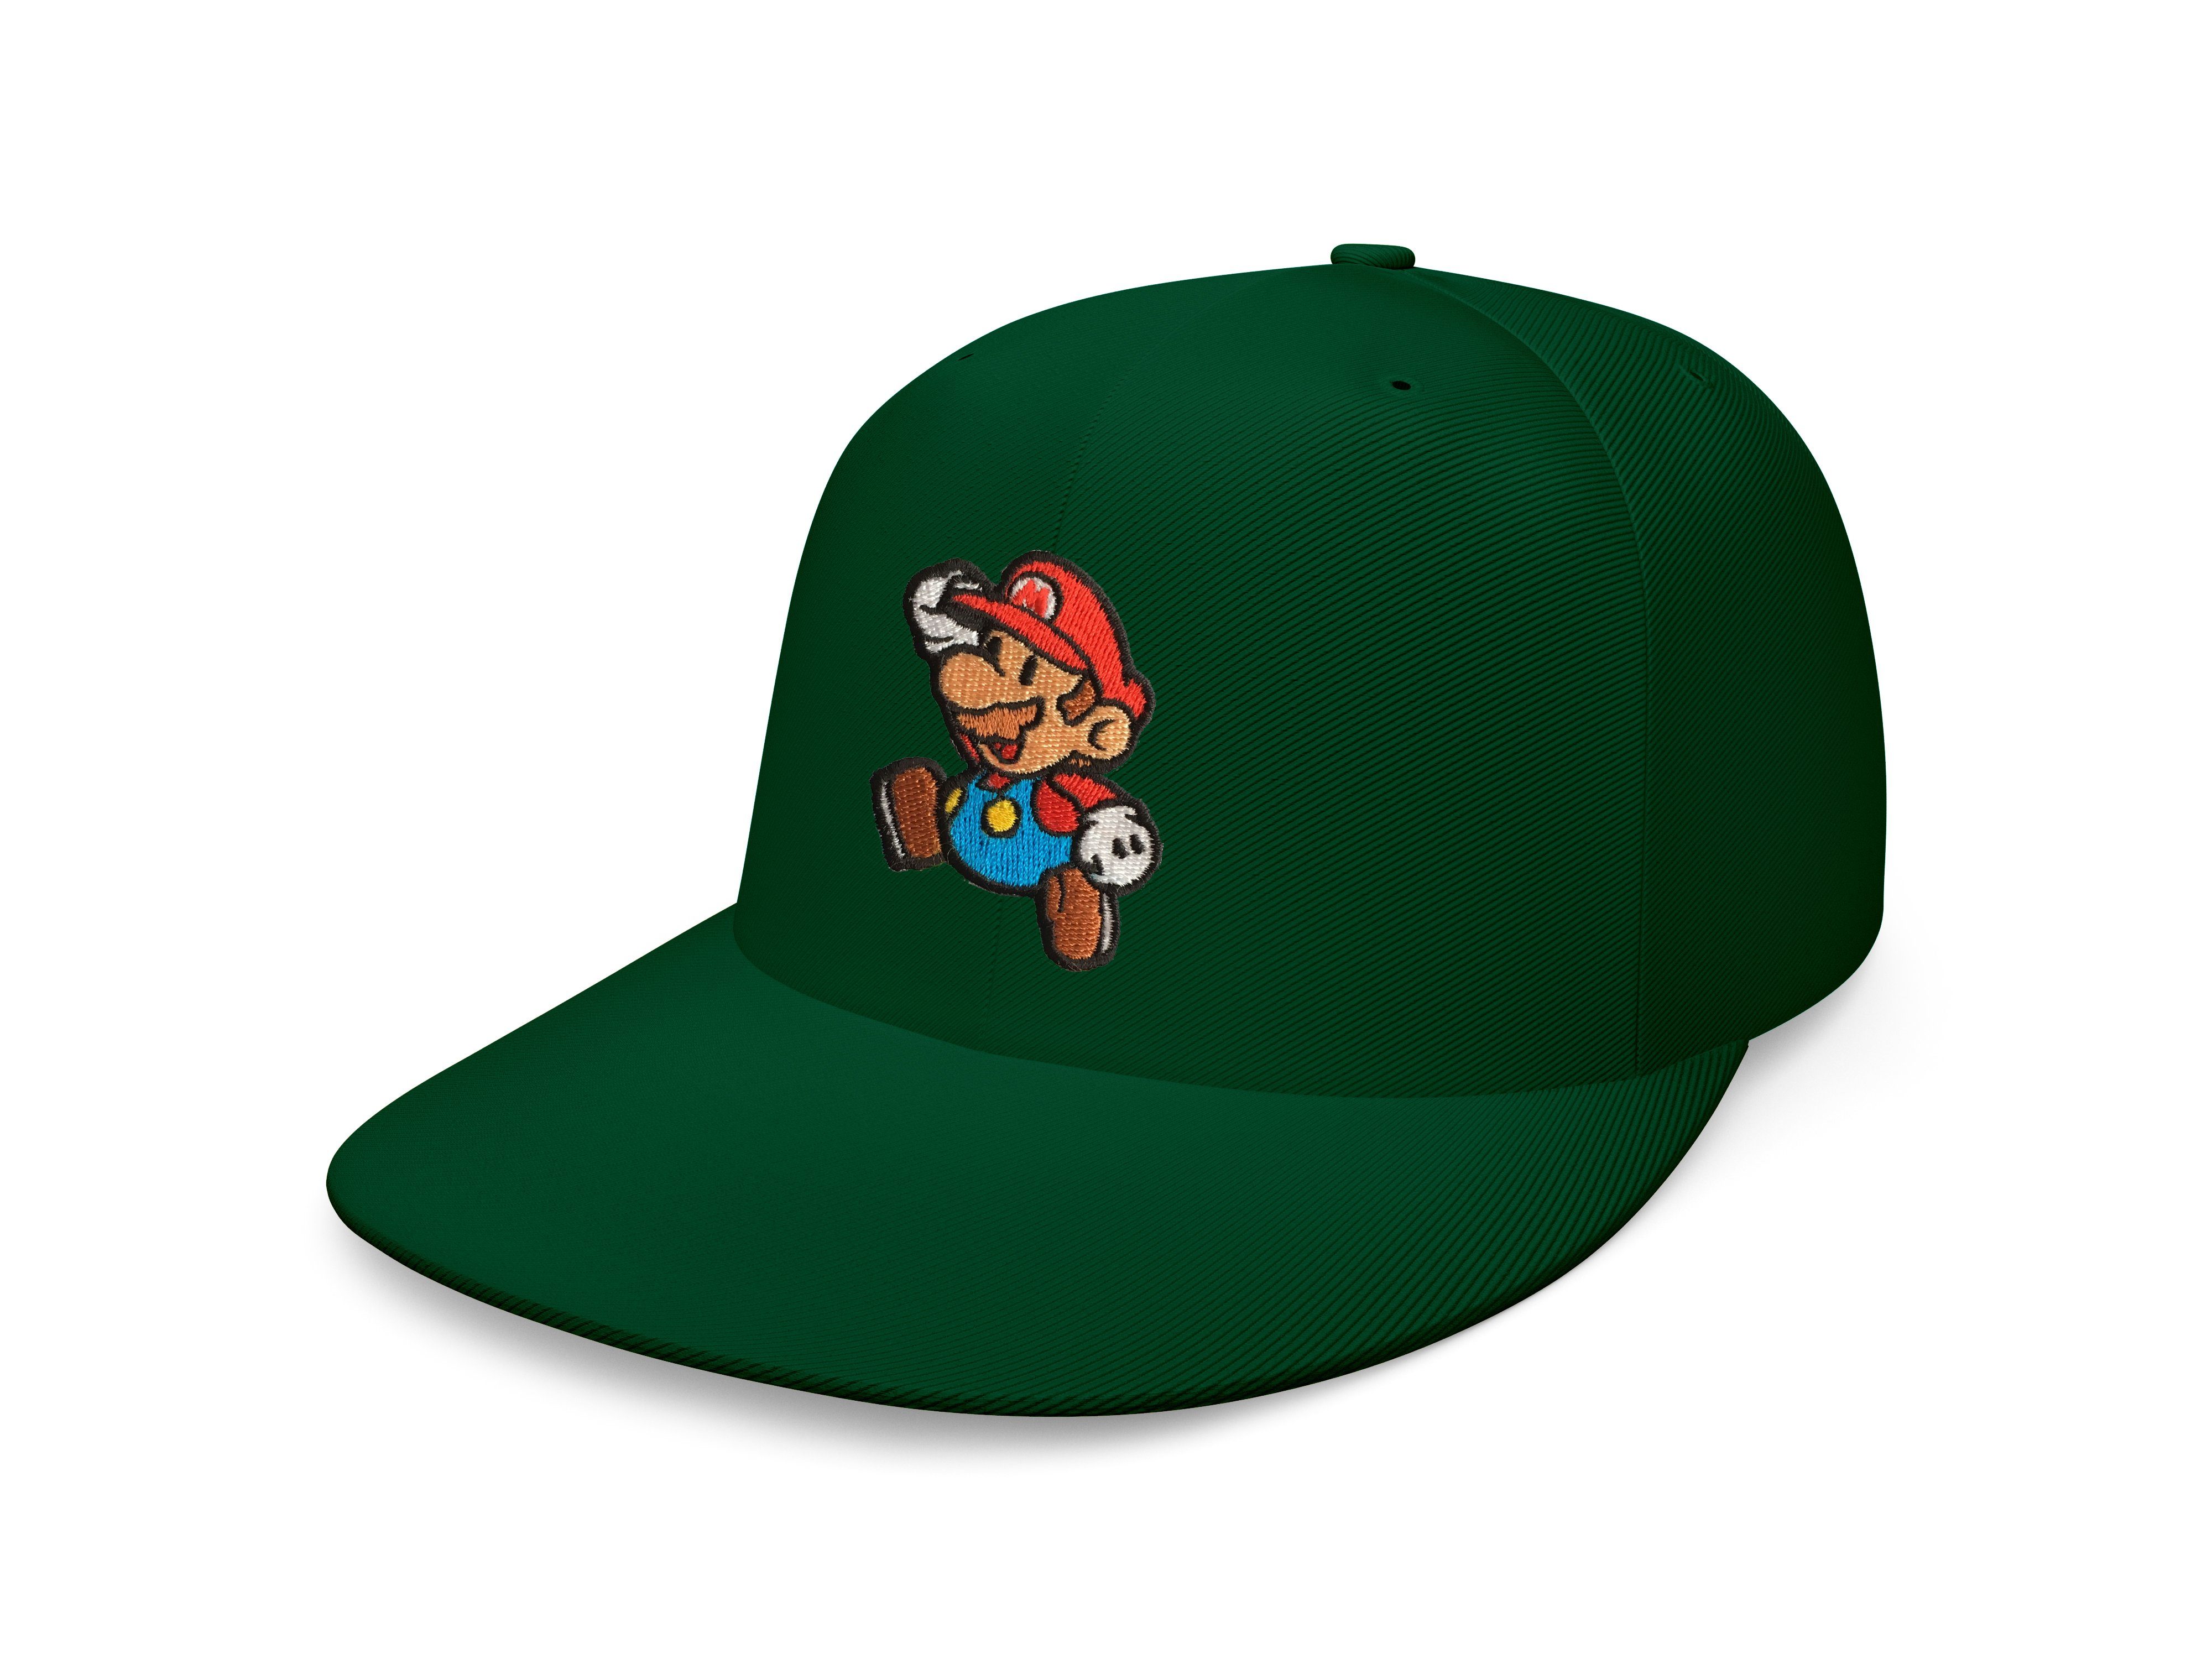 Blondie & Brownie Snapback Cap Unisex Erwachsene Mario Stick Patch Luigi Super Nintendo Snapback Flaschengrün